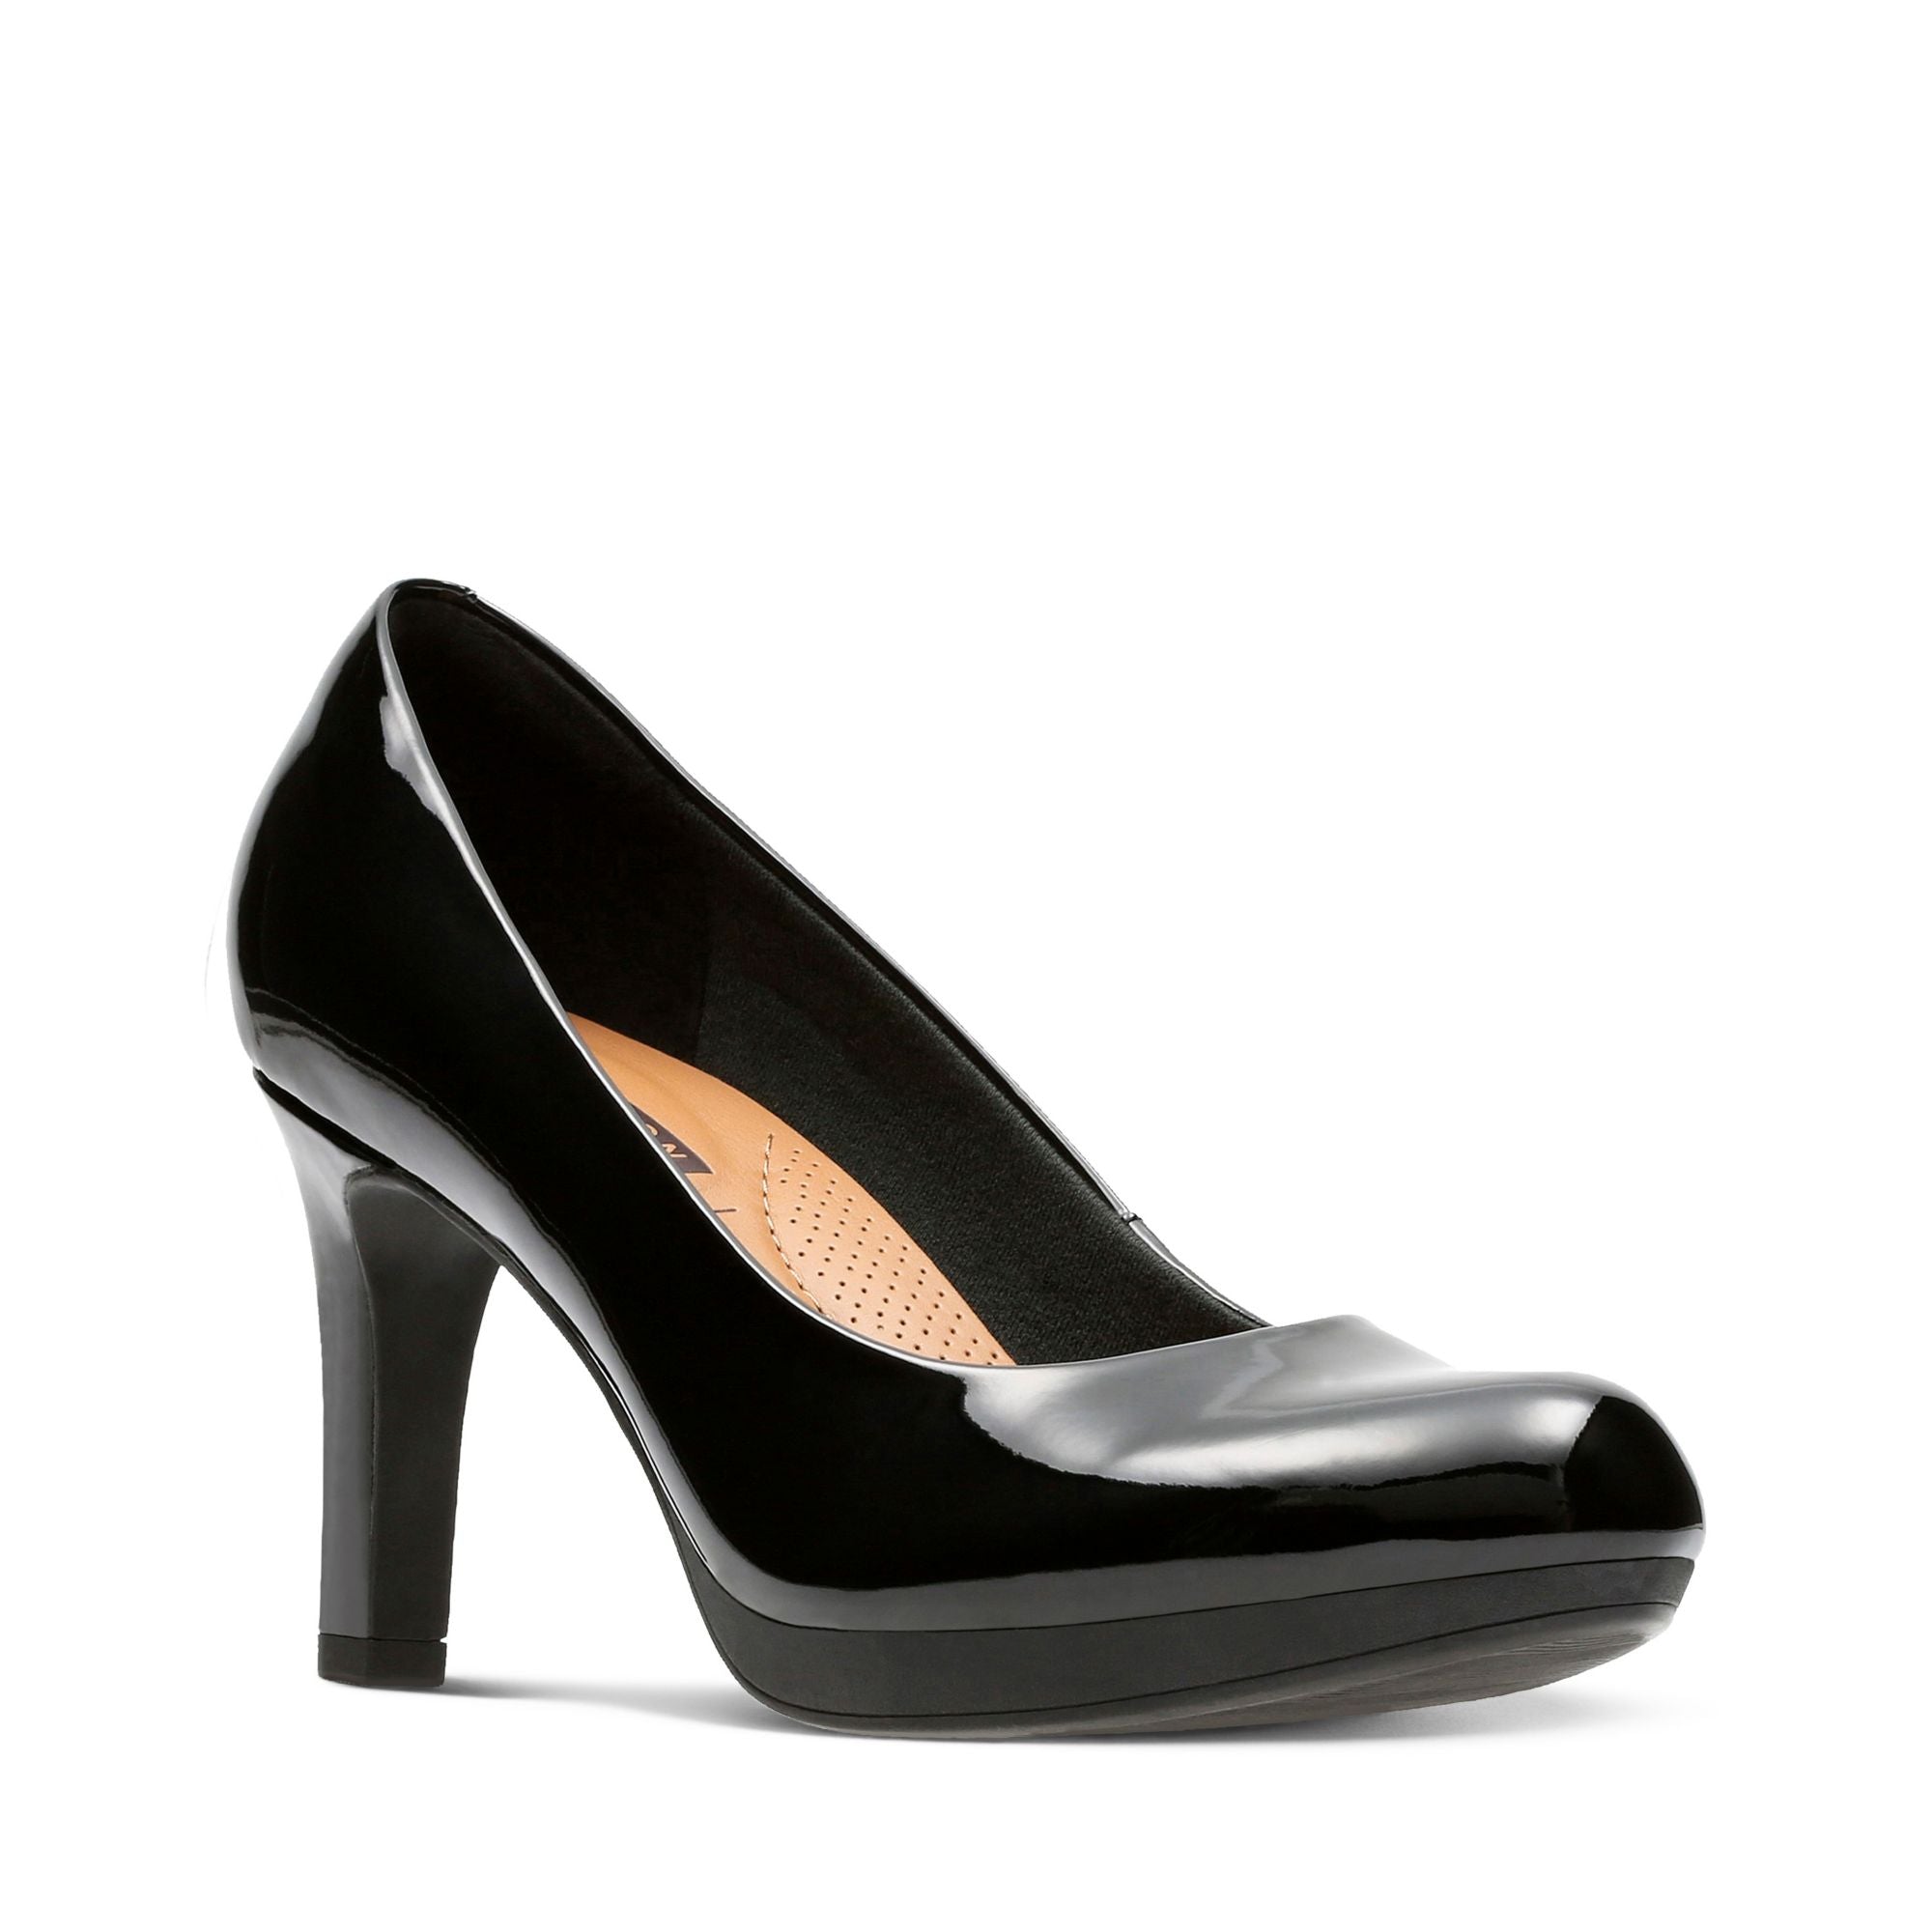 Clarks Solid Brown Heels Size 6 1/2 - 68% off | ThredUp